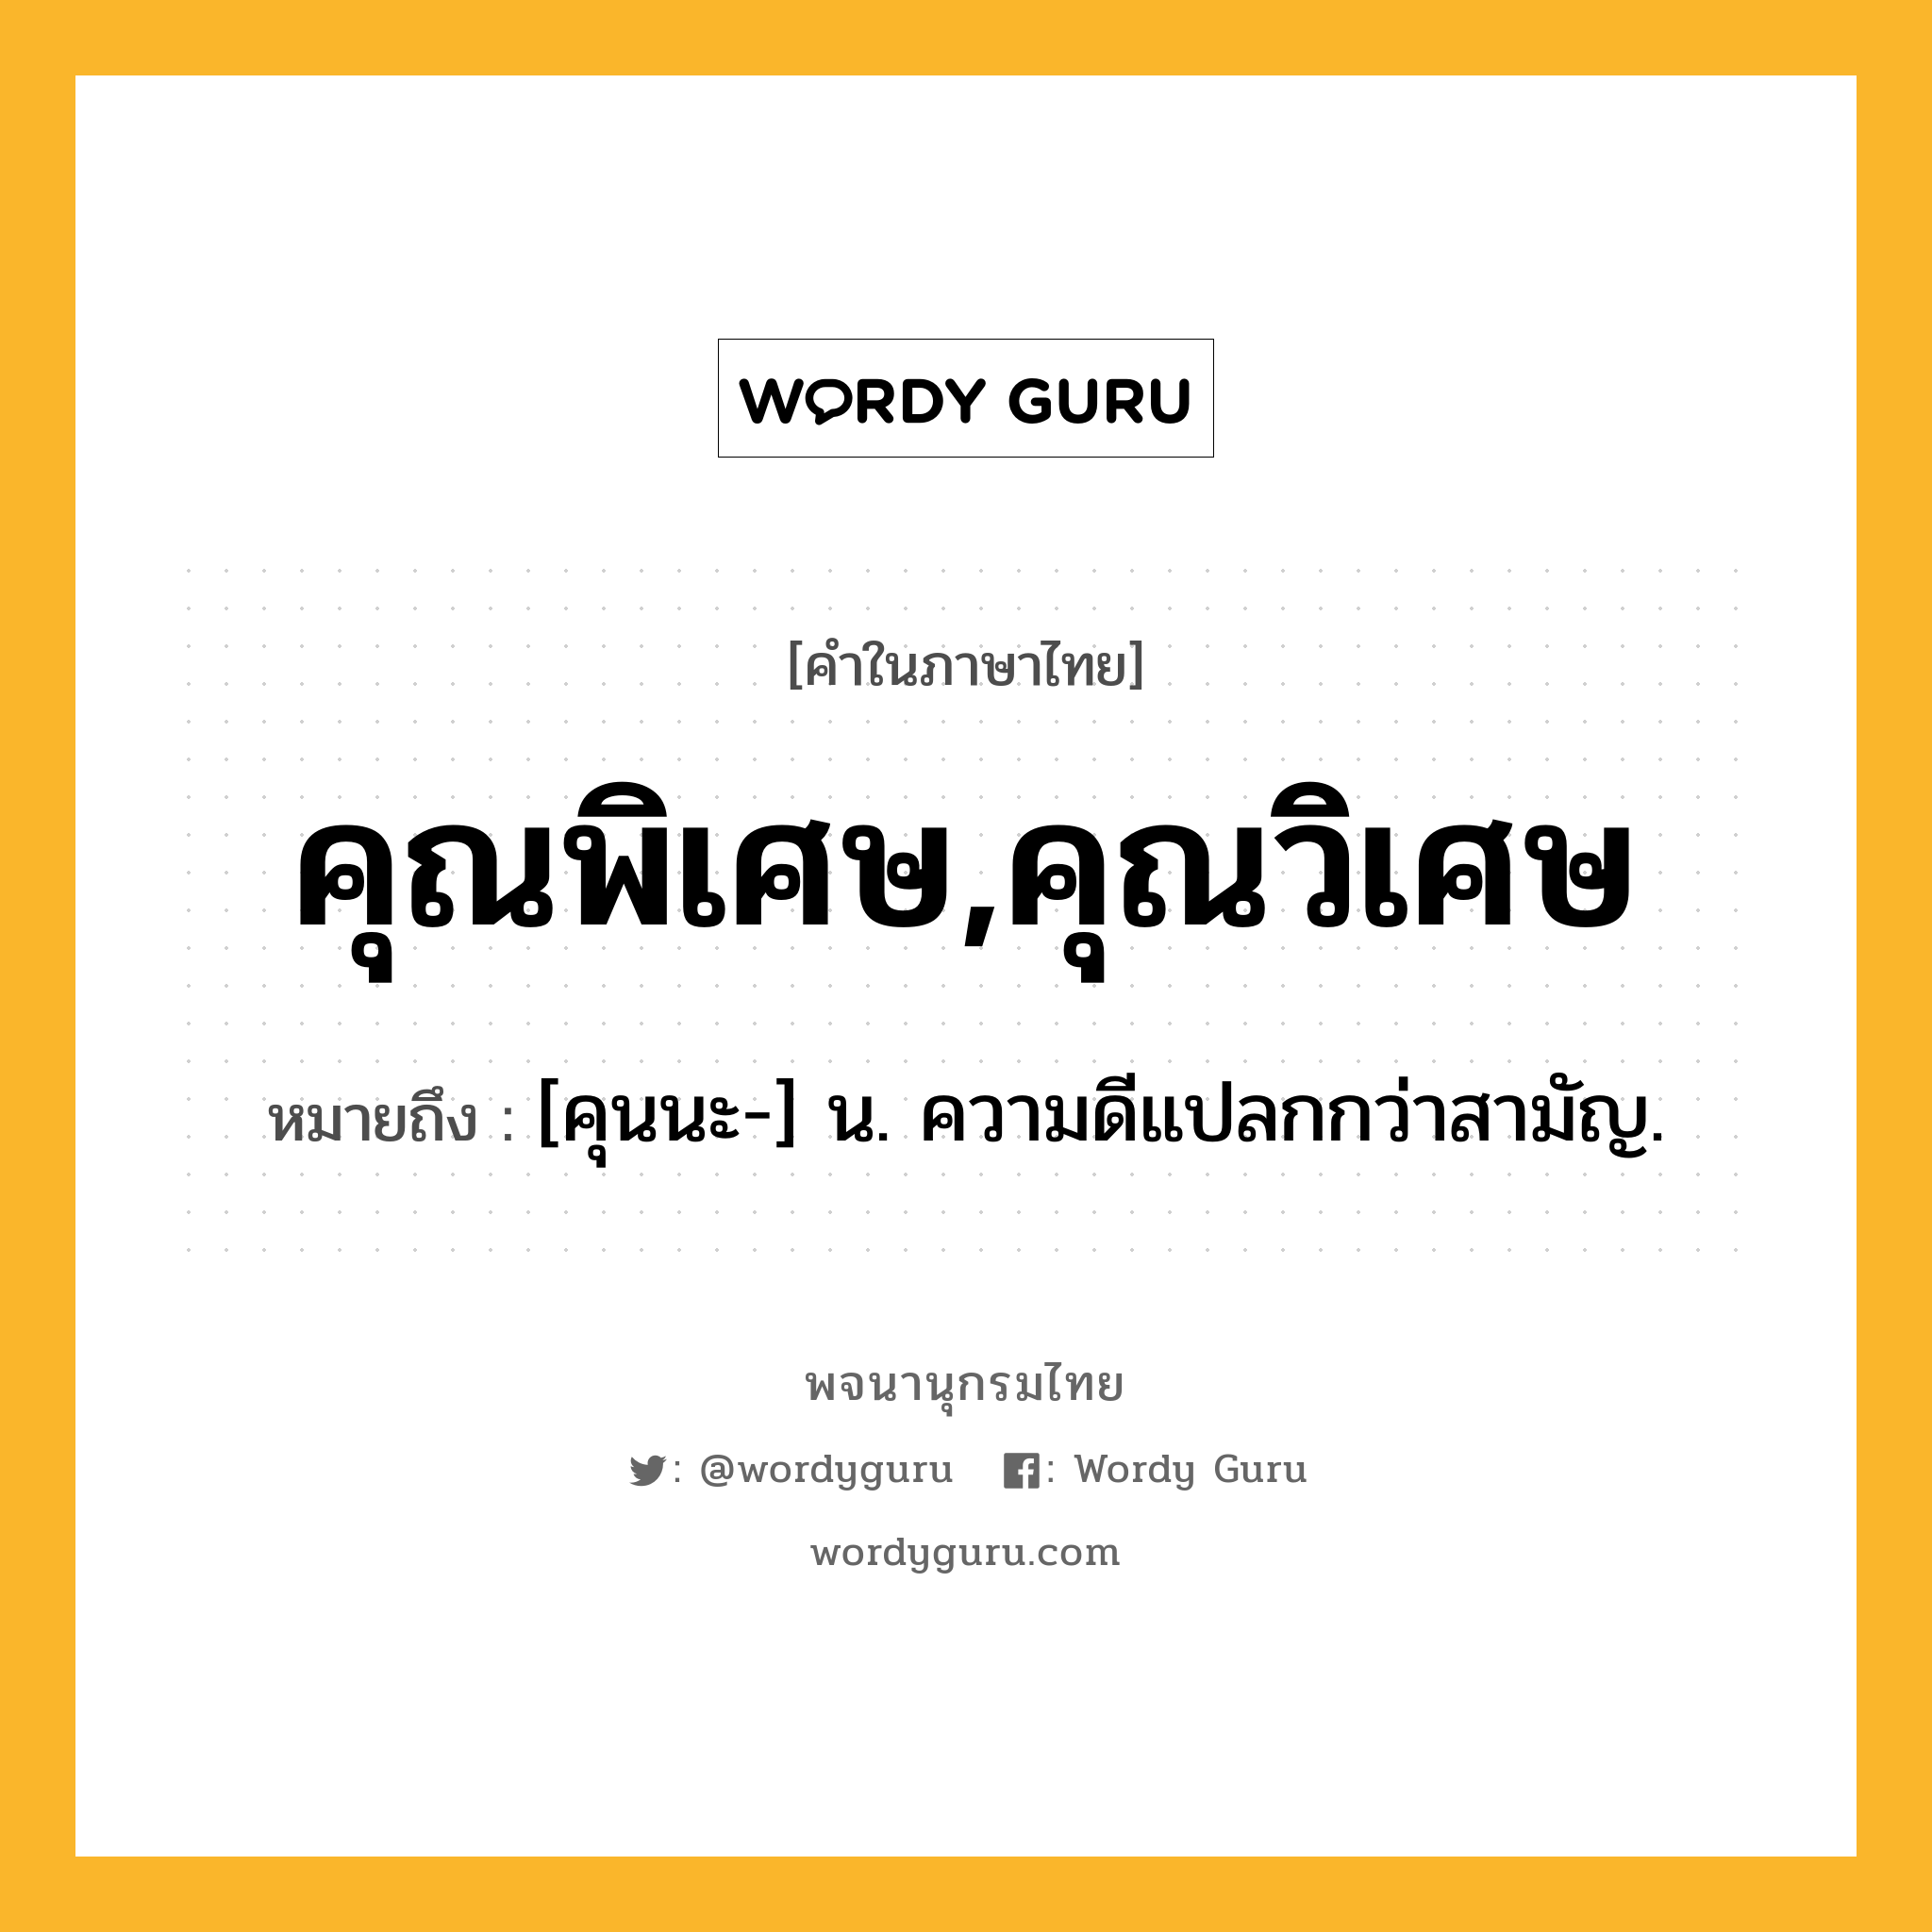 คุณพิเศษ,คุณวิเศษ หมายถึงอะไร?, คำในภาษาไทย คุณพิเศษ,คุณวิเศษ หมายถึง [คุนนะ-] น. ความดีแปลกกว่าสามัญ.